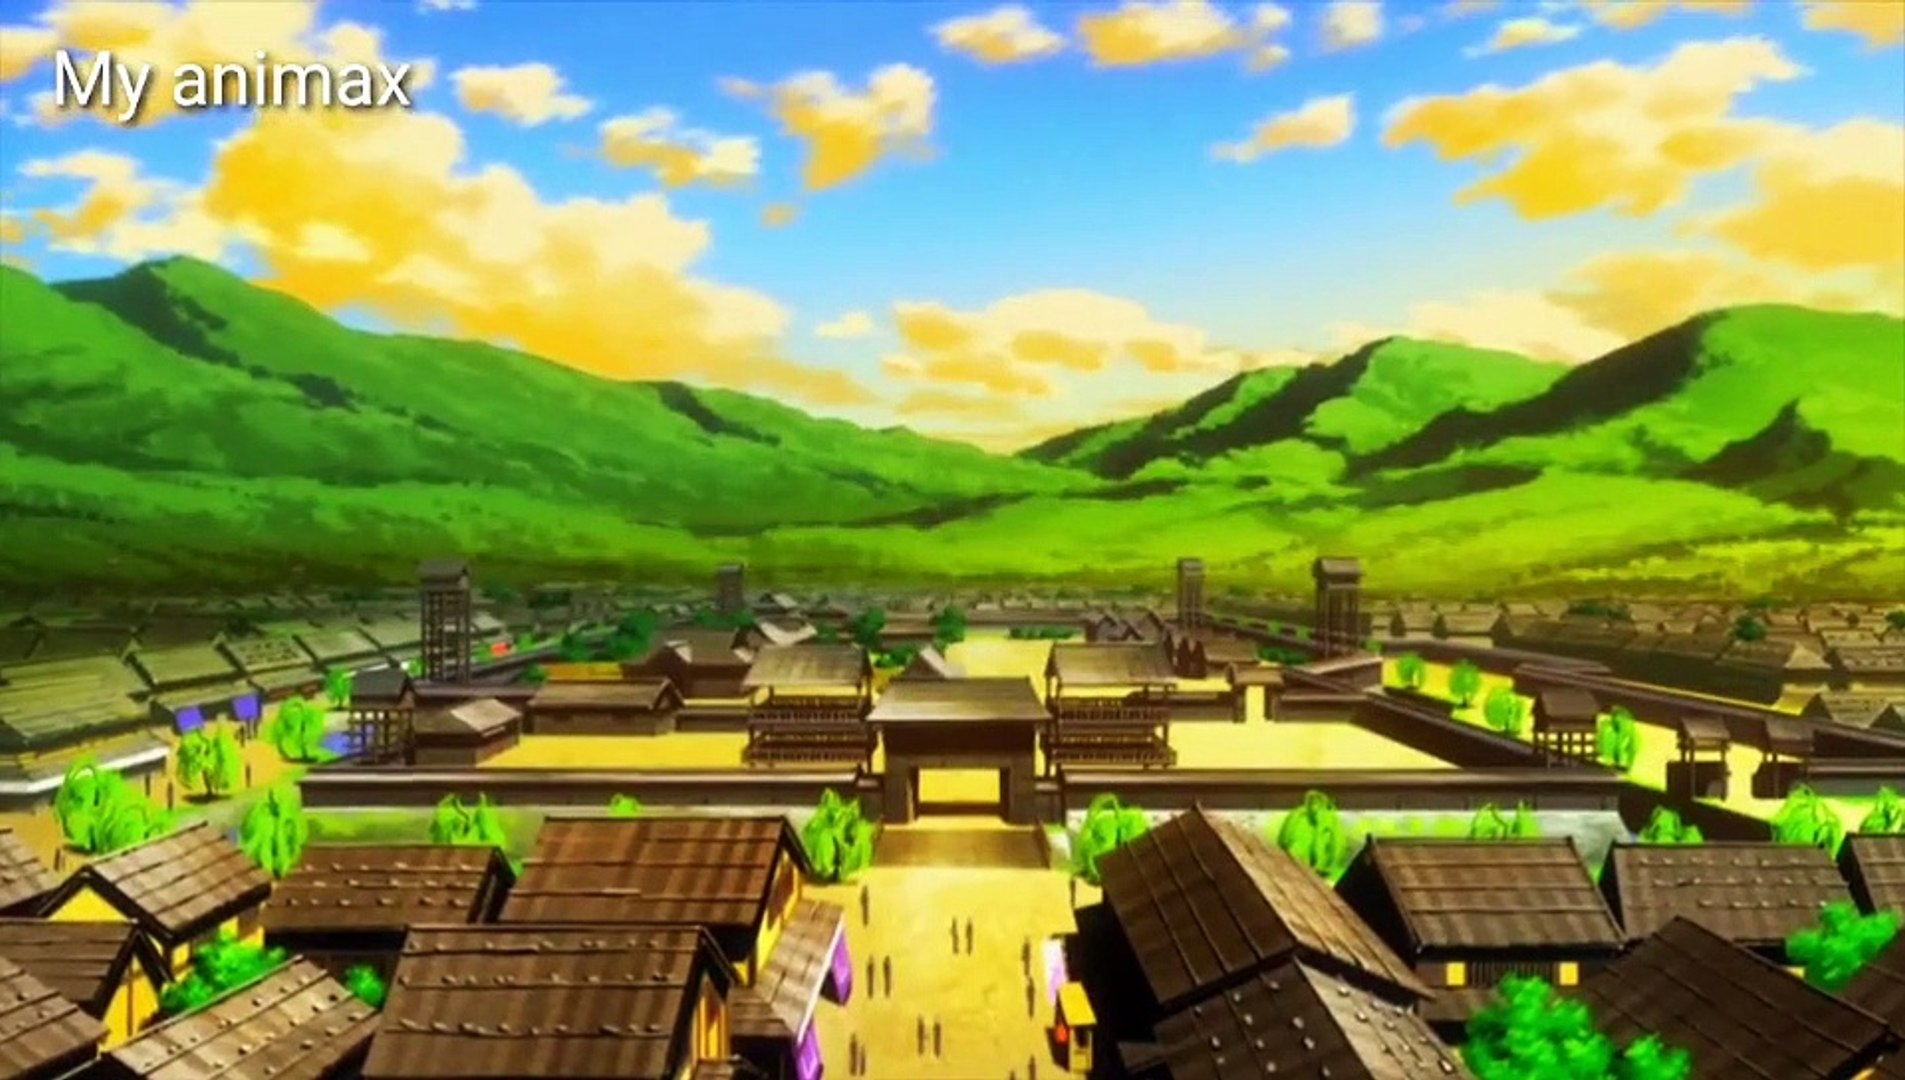 ⁣Oda nobuna noyabou english dubbed| Episode 3 english dubbed